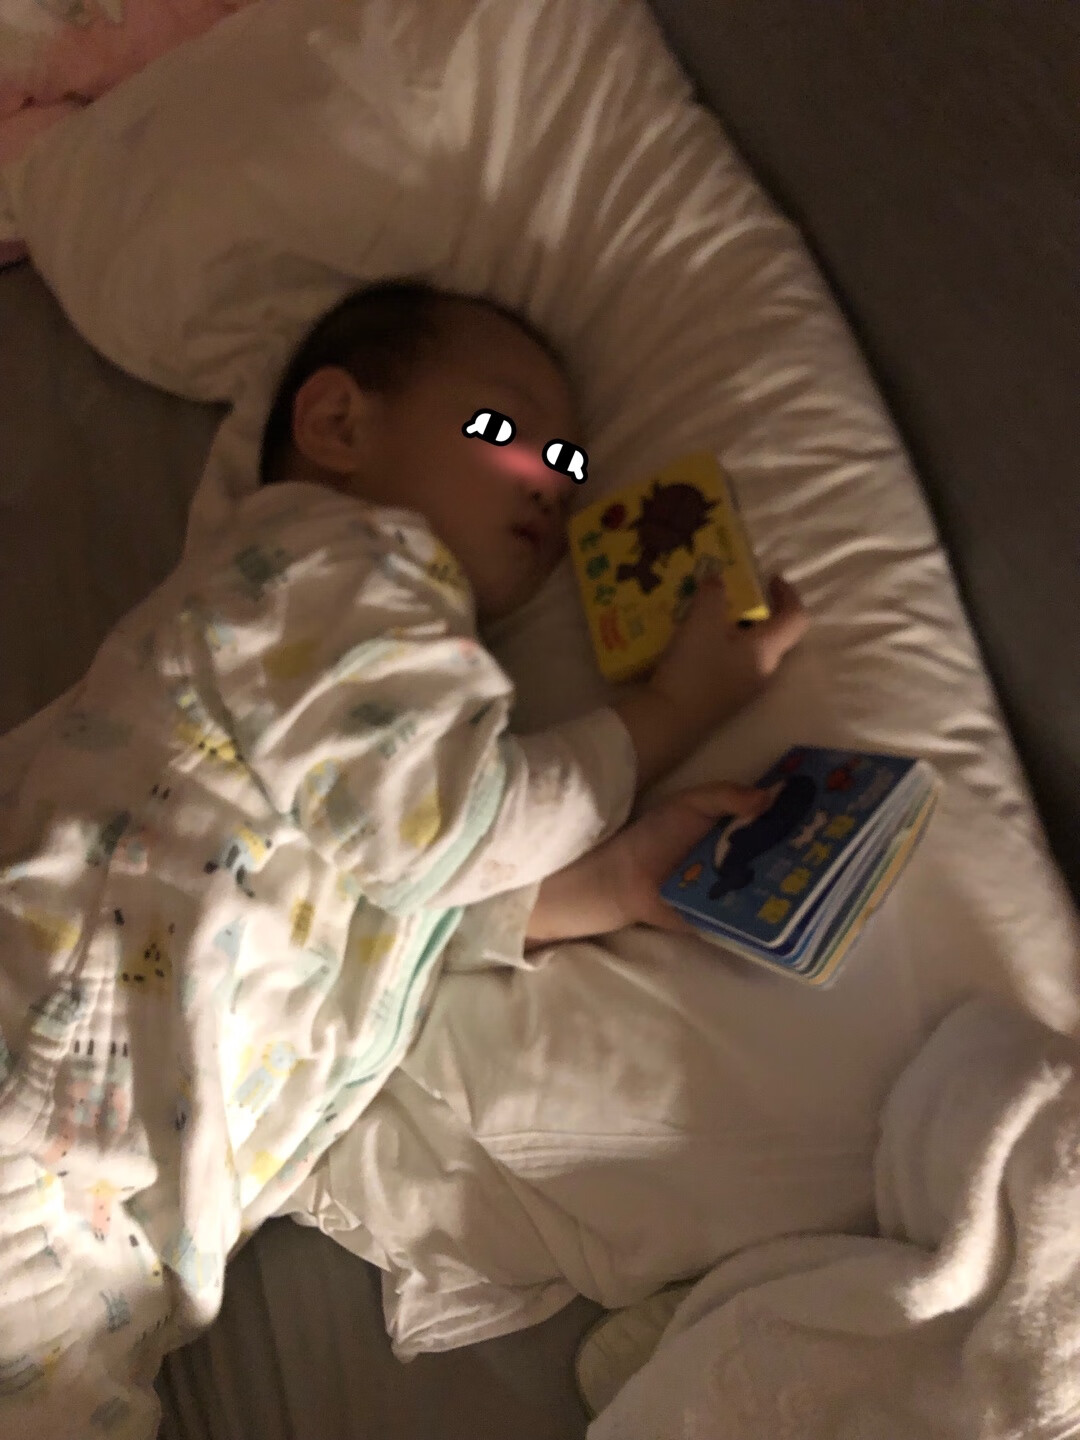 这套书迅速成为宝宝最爱！一岁九个月的宝宝很喜欢这套书，去哪都得带着，睡觉也得拿着睡。在车上坐不耐烦了拿出来就可以看好久，比什么玩具都好使，就是书的材质不耐撕，没看多久就撕了大半了，越爱看的越不完整。打算有活动把别的系列也入了